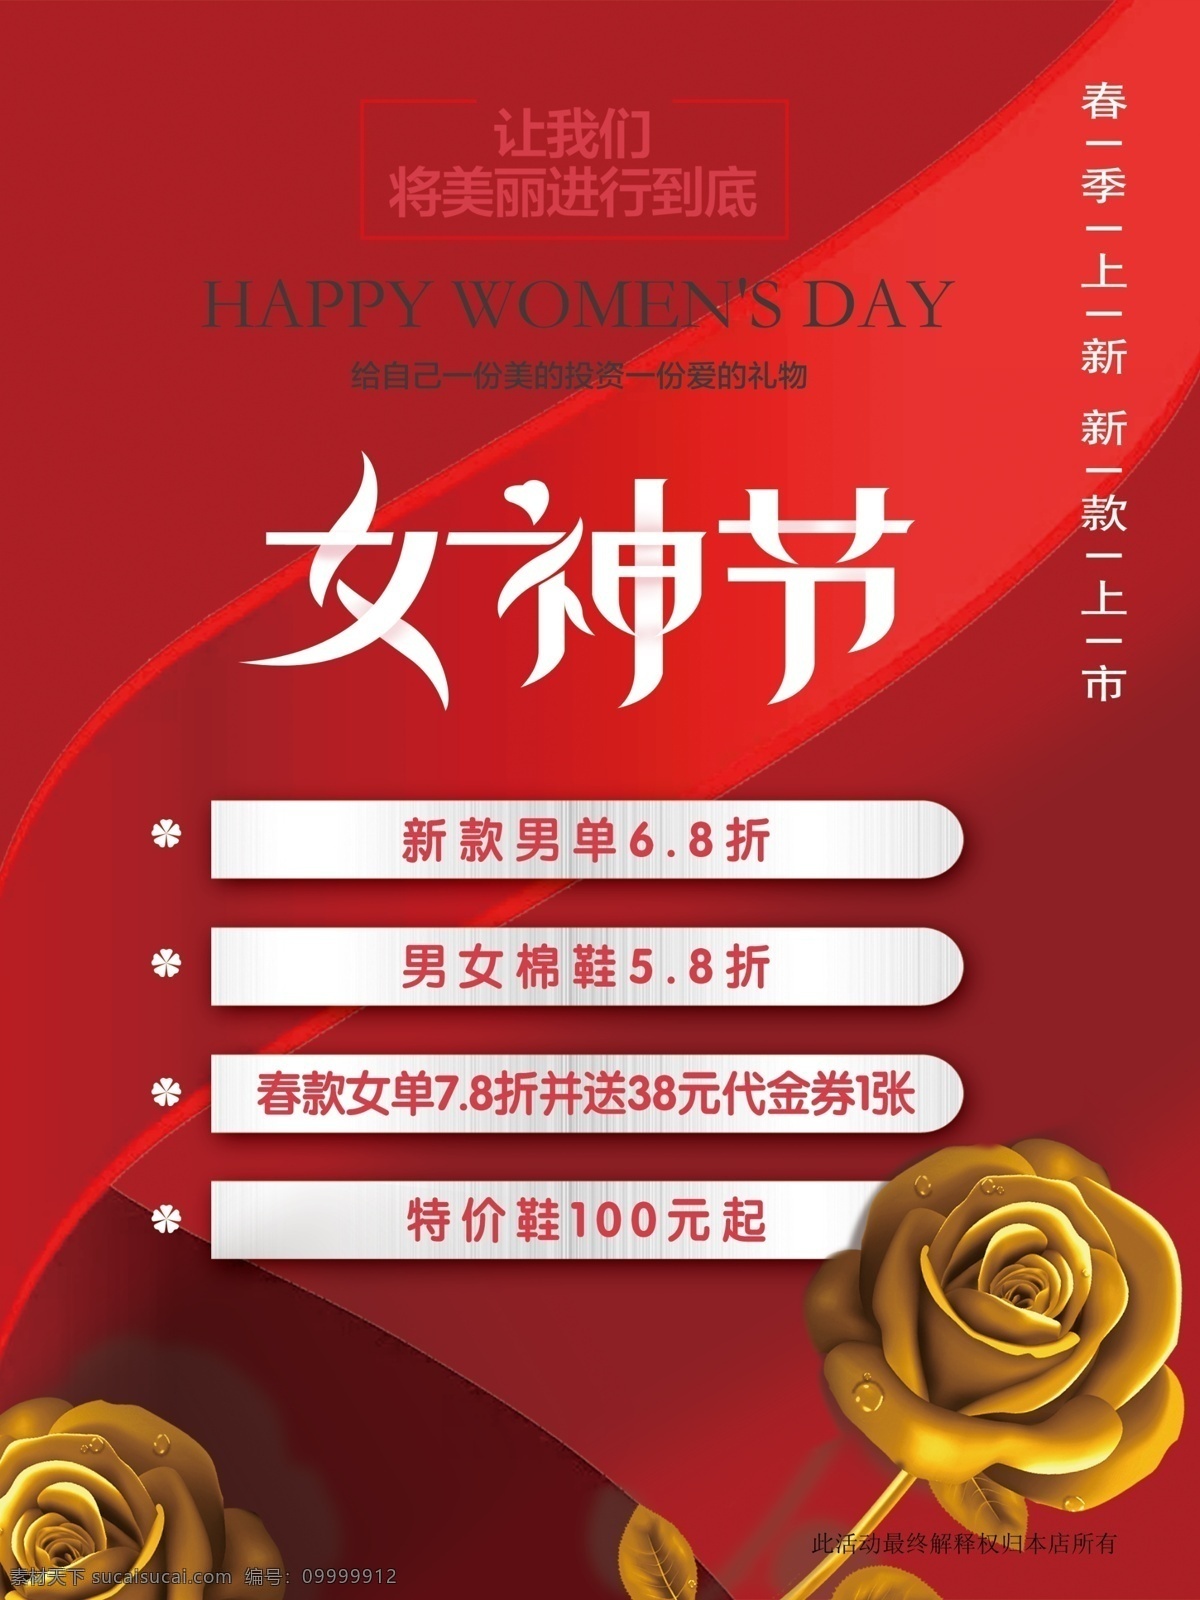 女神节 三八妇女节 鞋店海报 红色模版 金玫瑰 室外广告设计